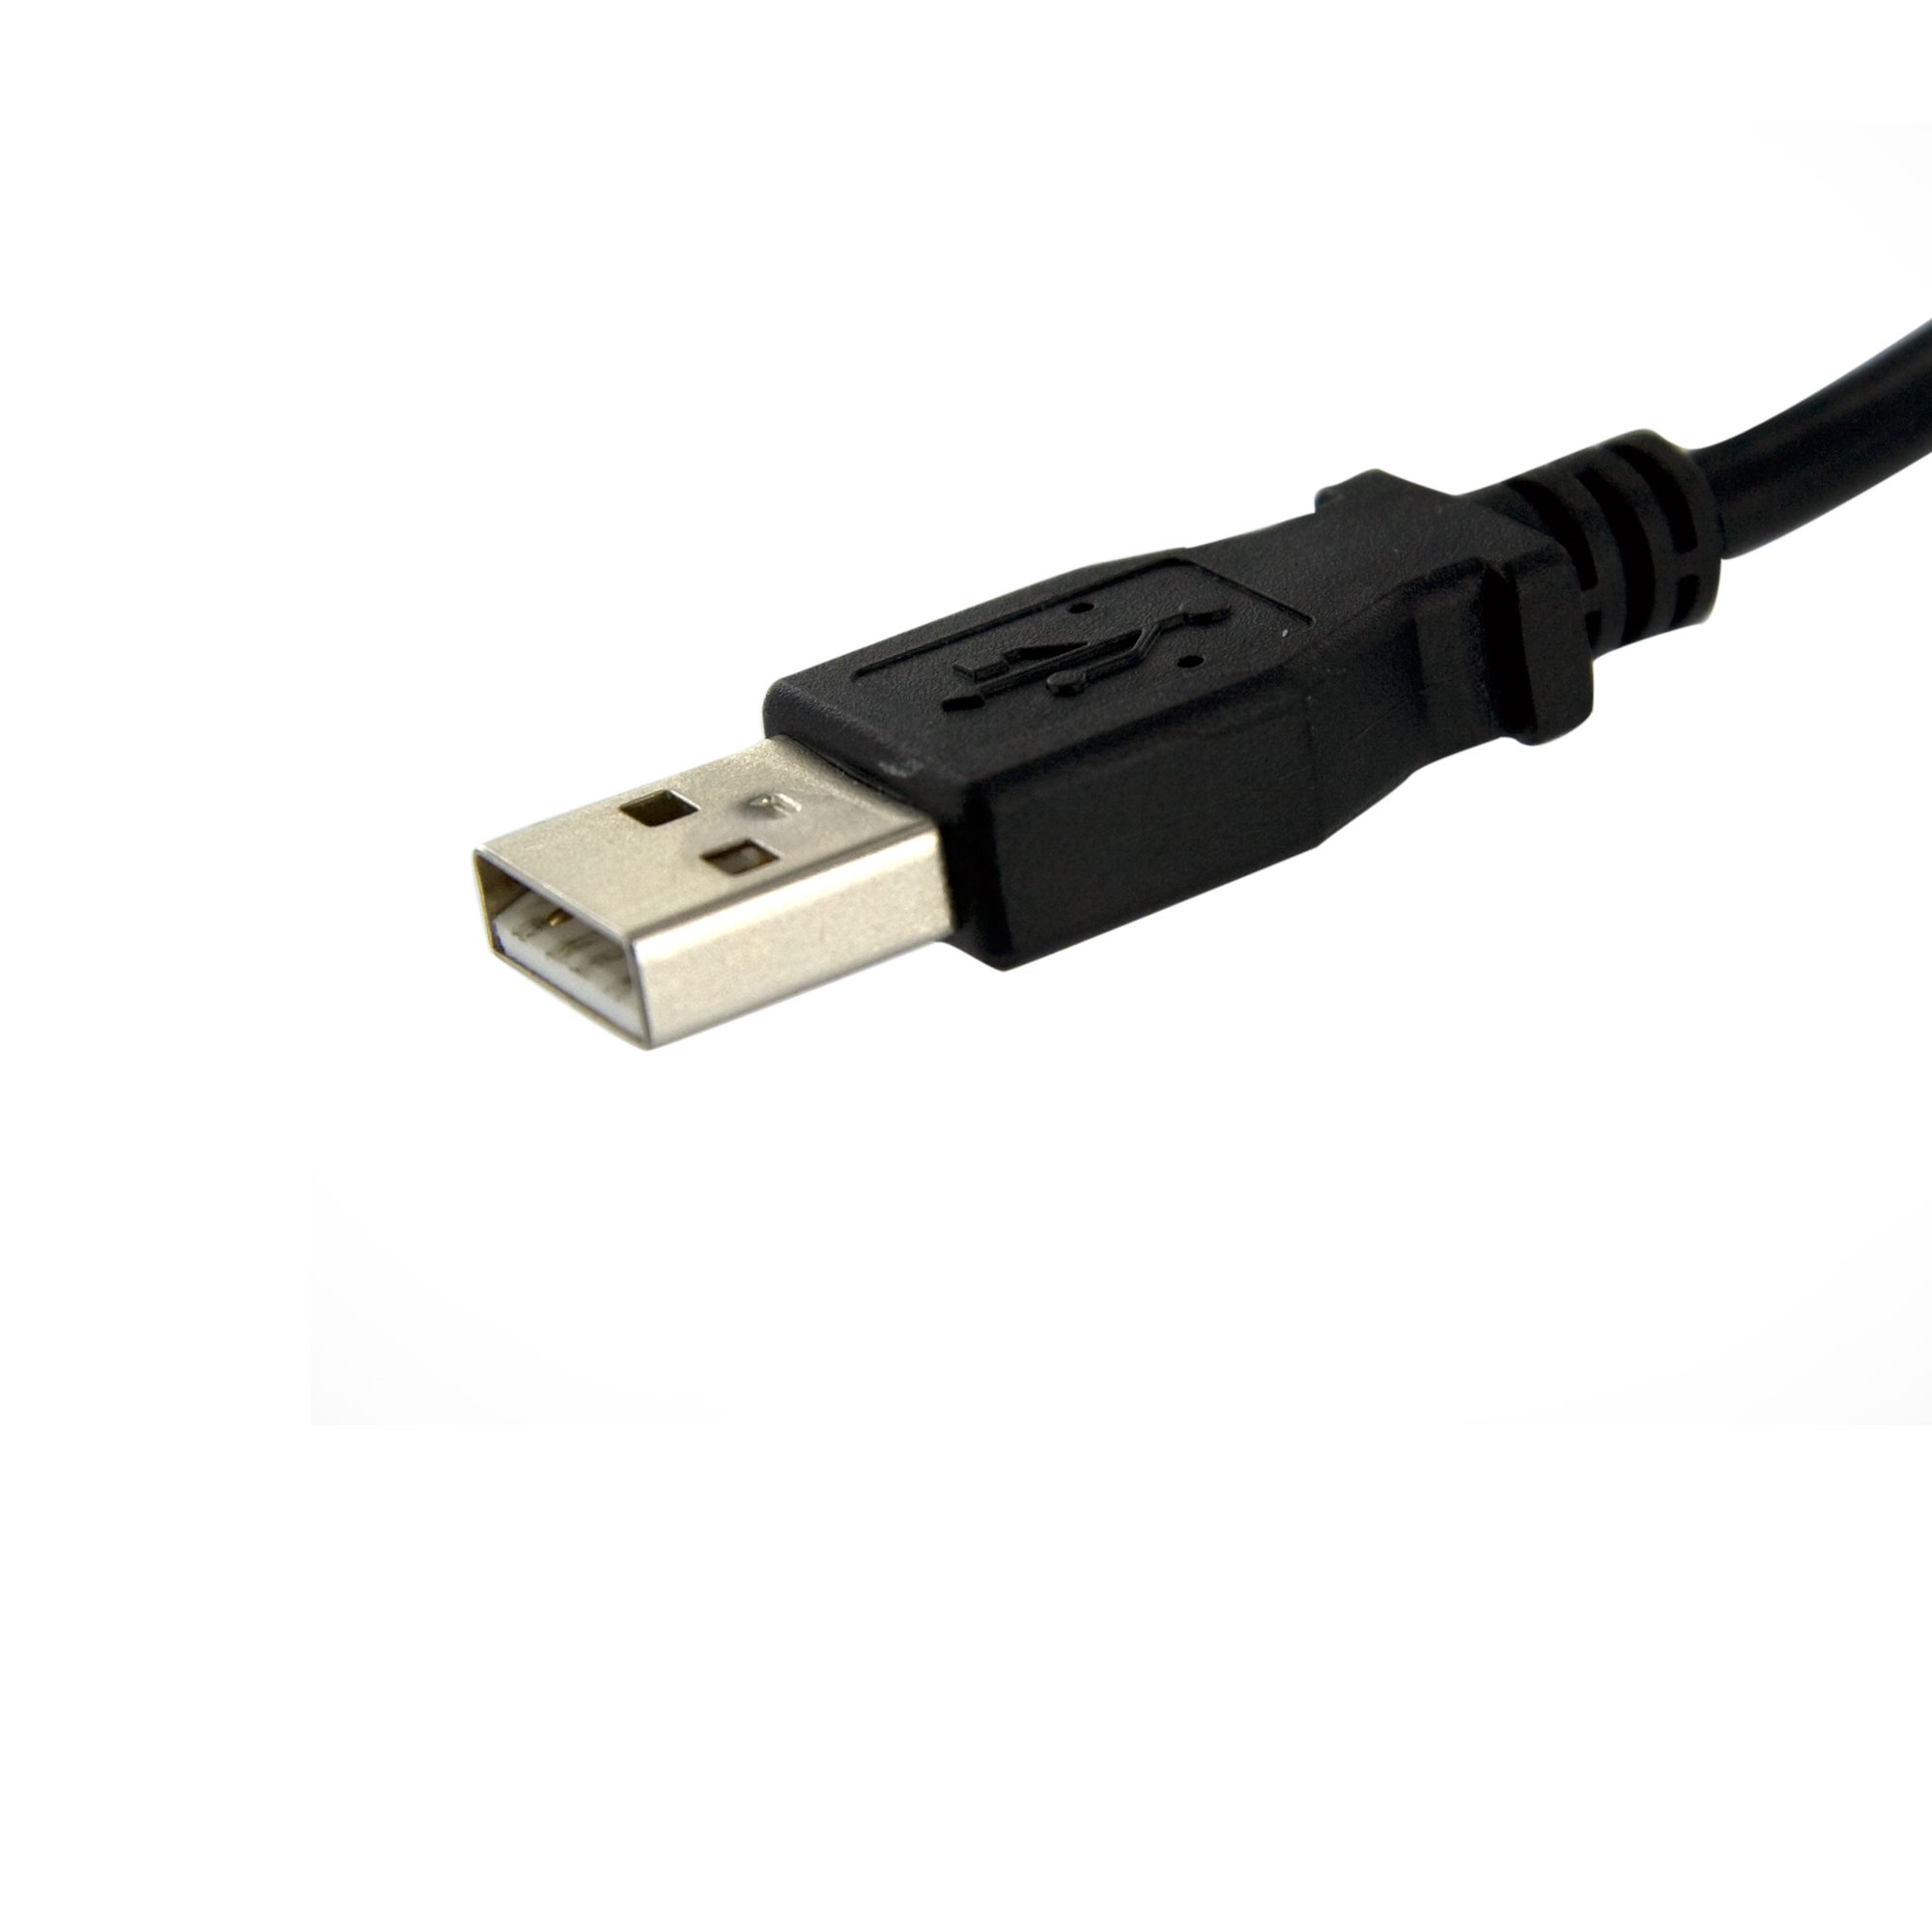 Usb купить воронеж. USB Cable male female Black кабель. USB B на панель. USB F.